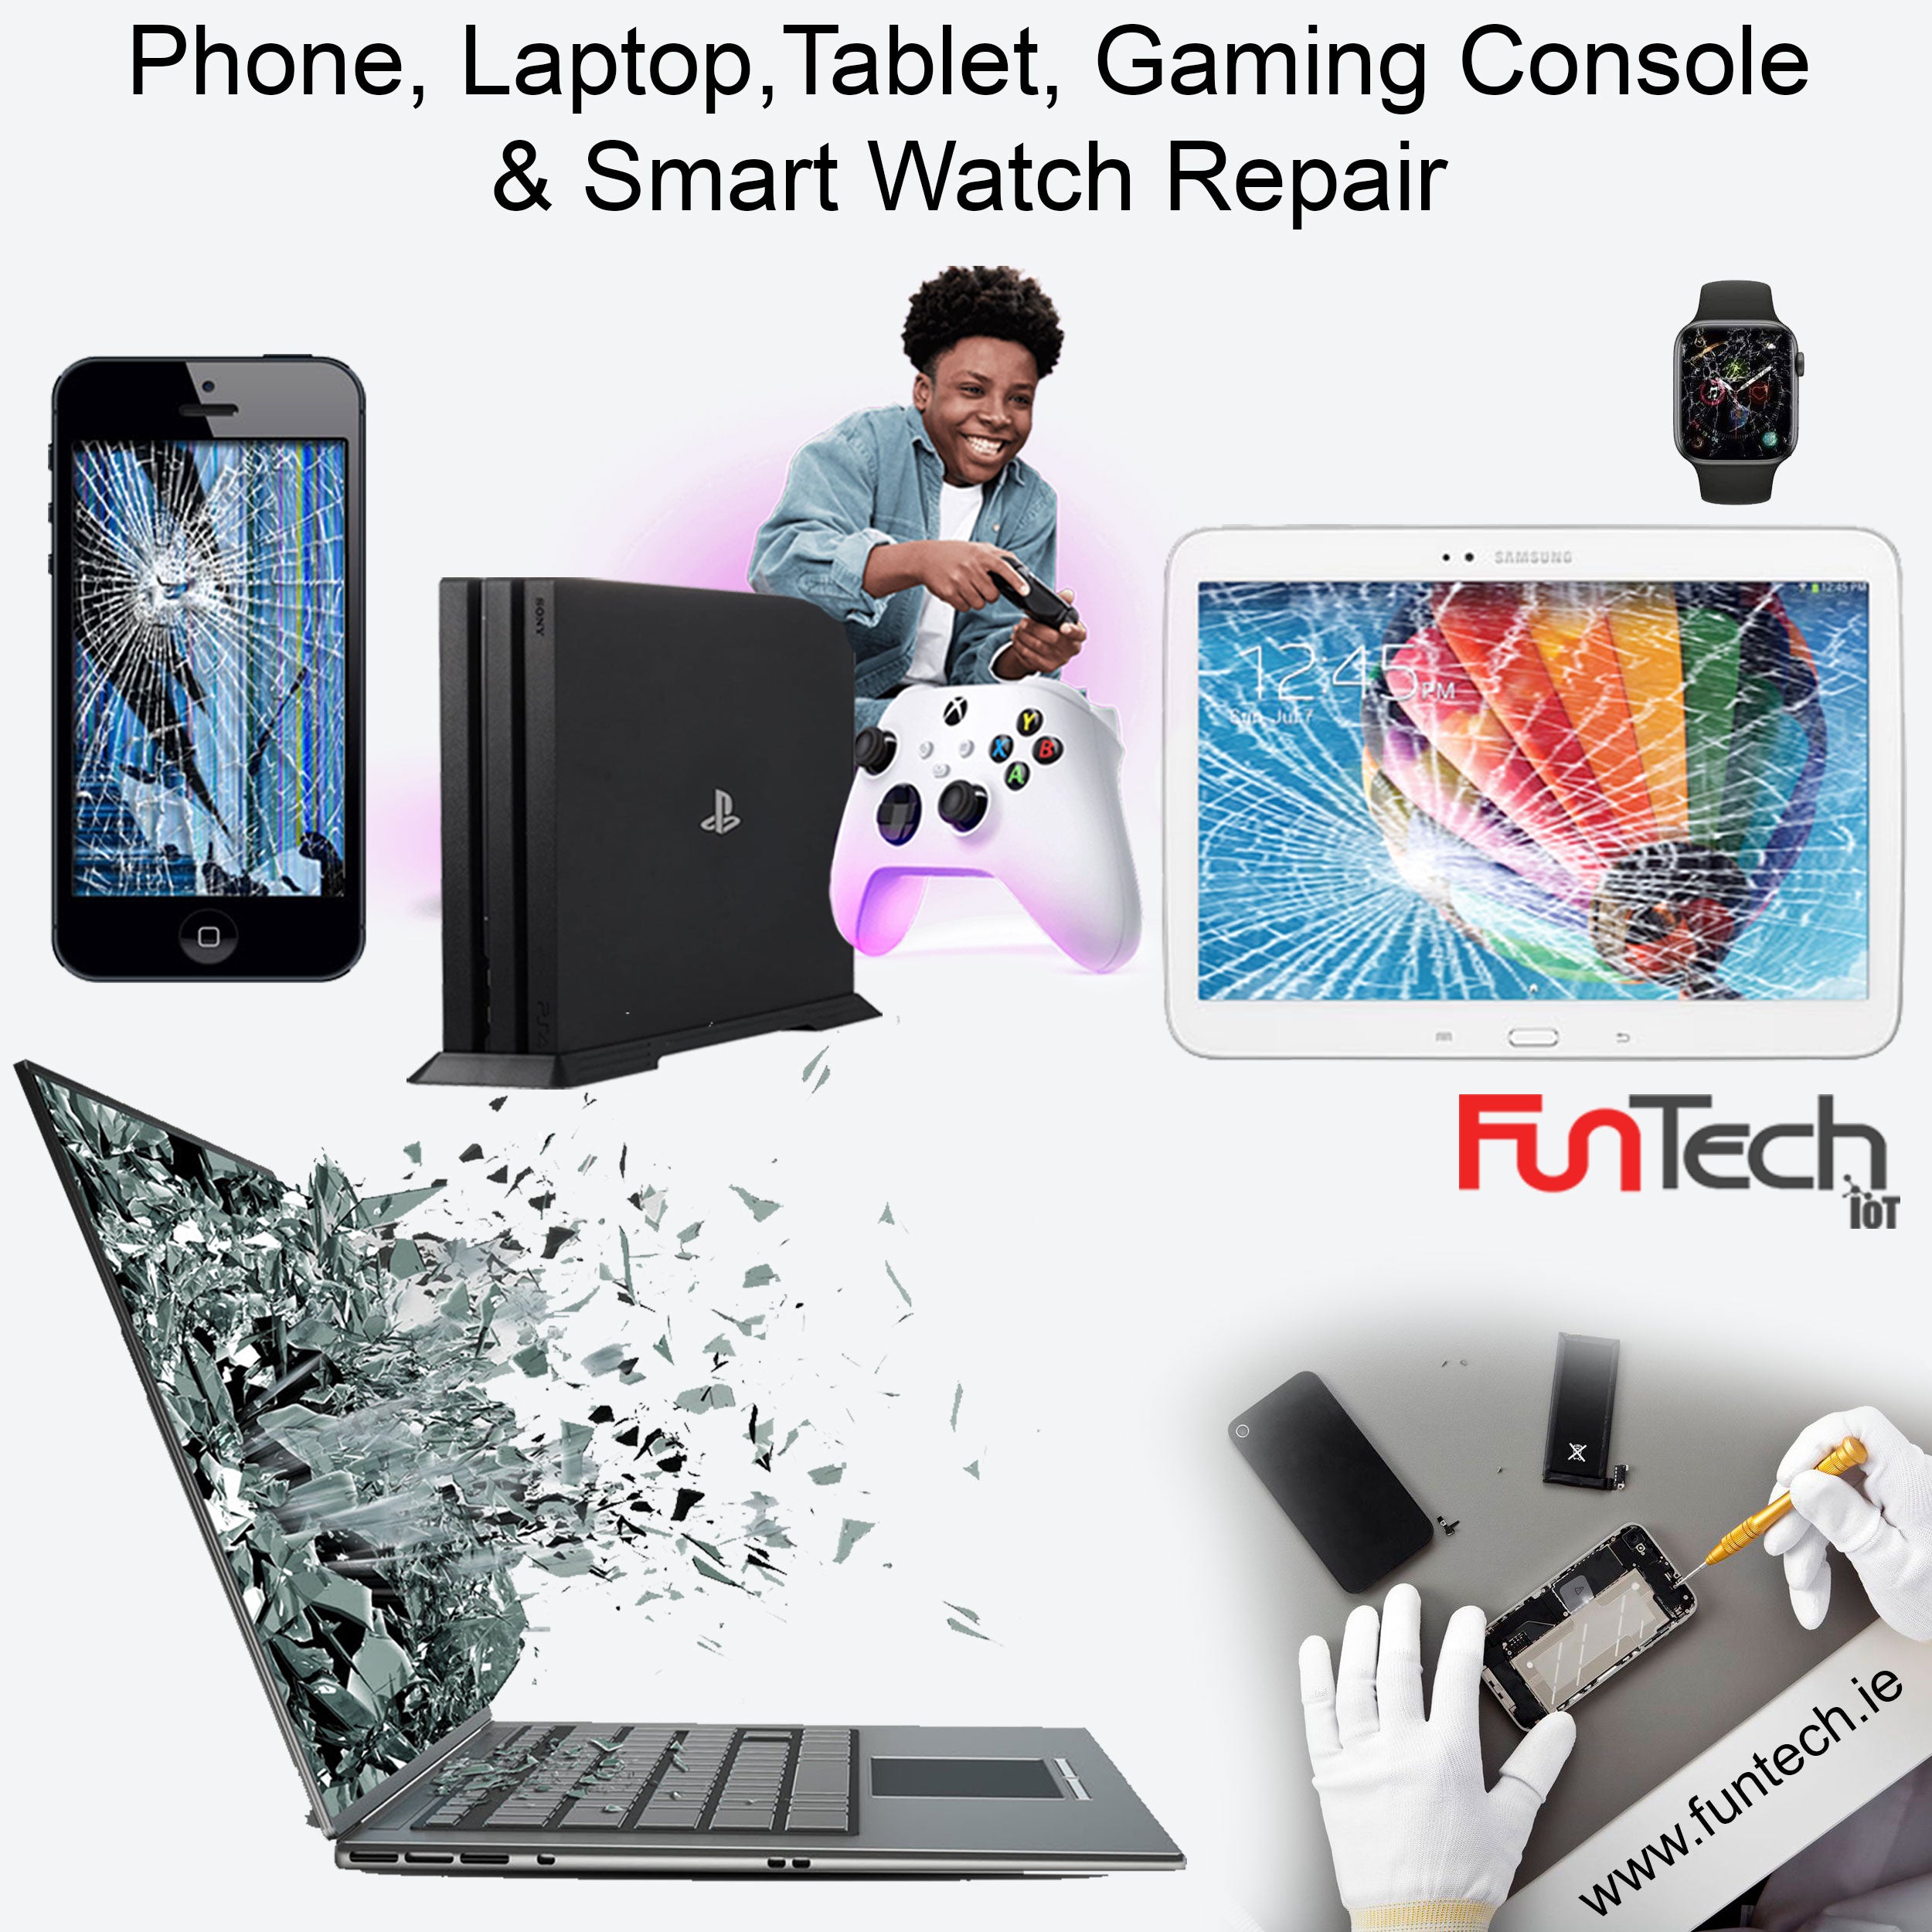 Phone repair, Laptop repair, Tablet repair, Gaming Console repair, smartwatch repair in Ireland,